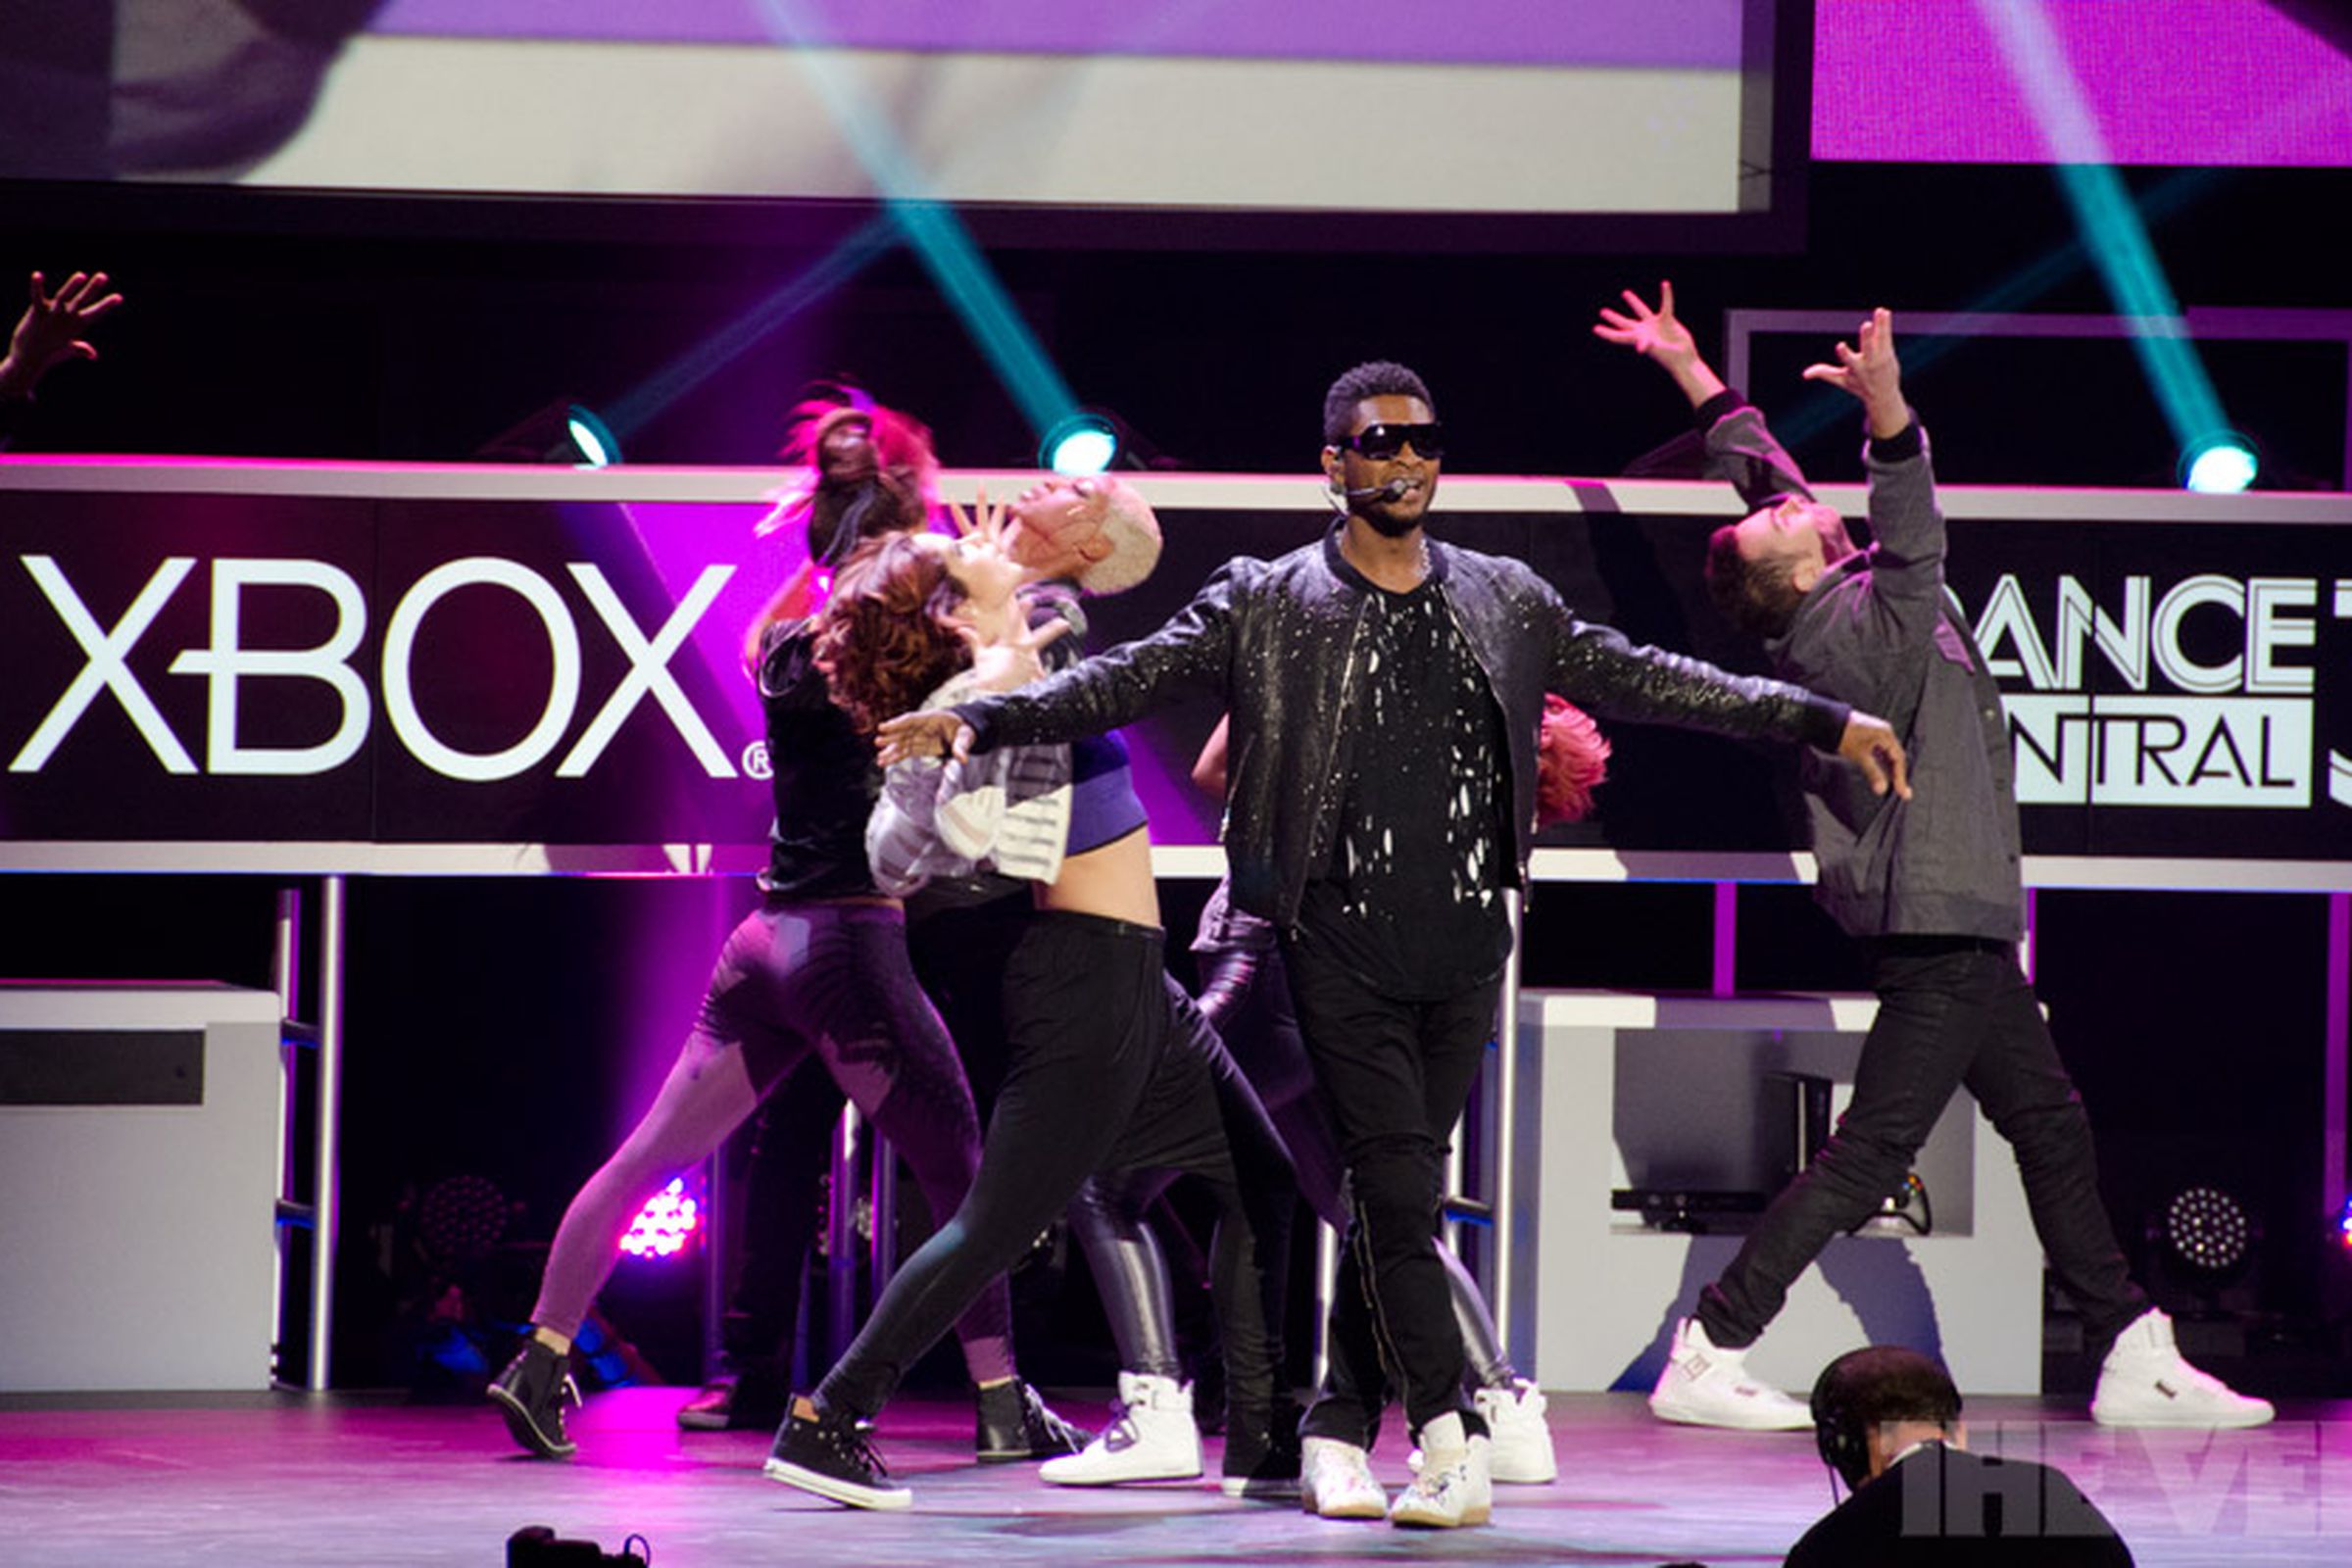 Usher at E3 / Microsoft Xbox 360